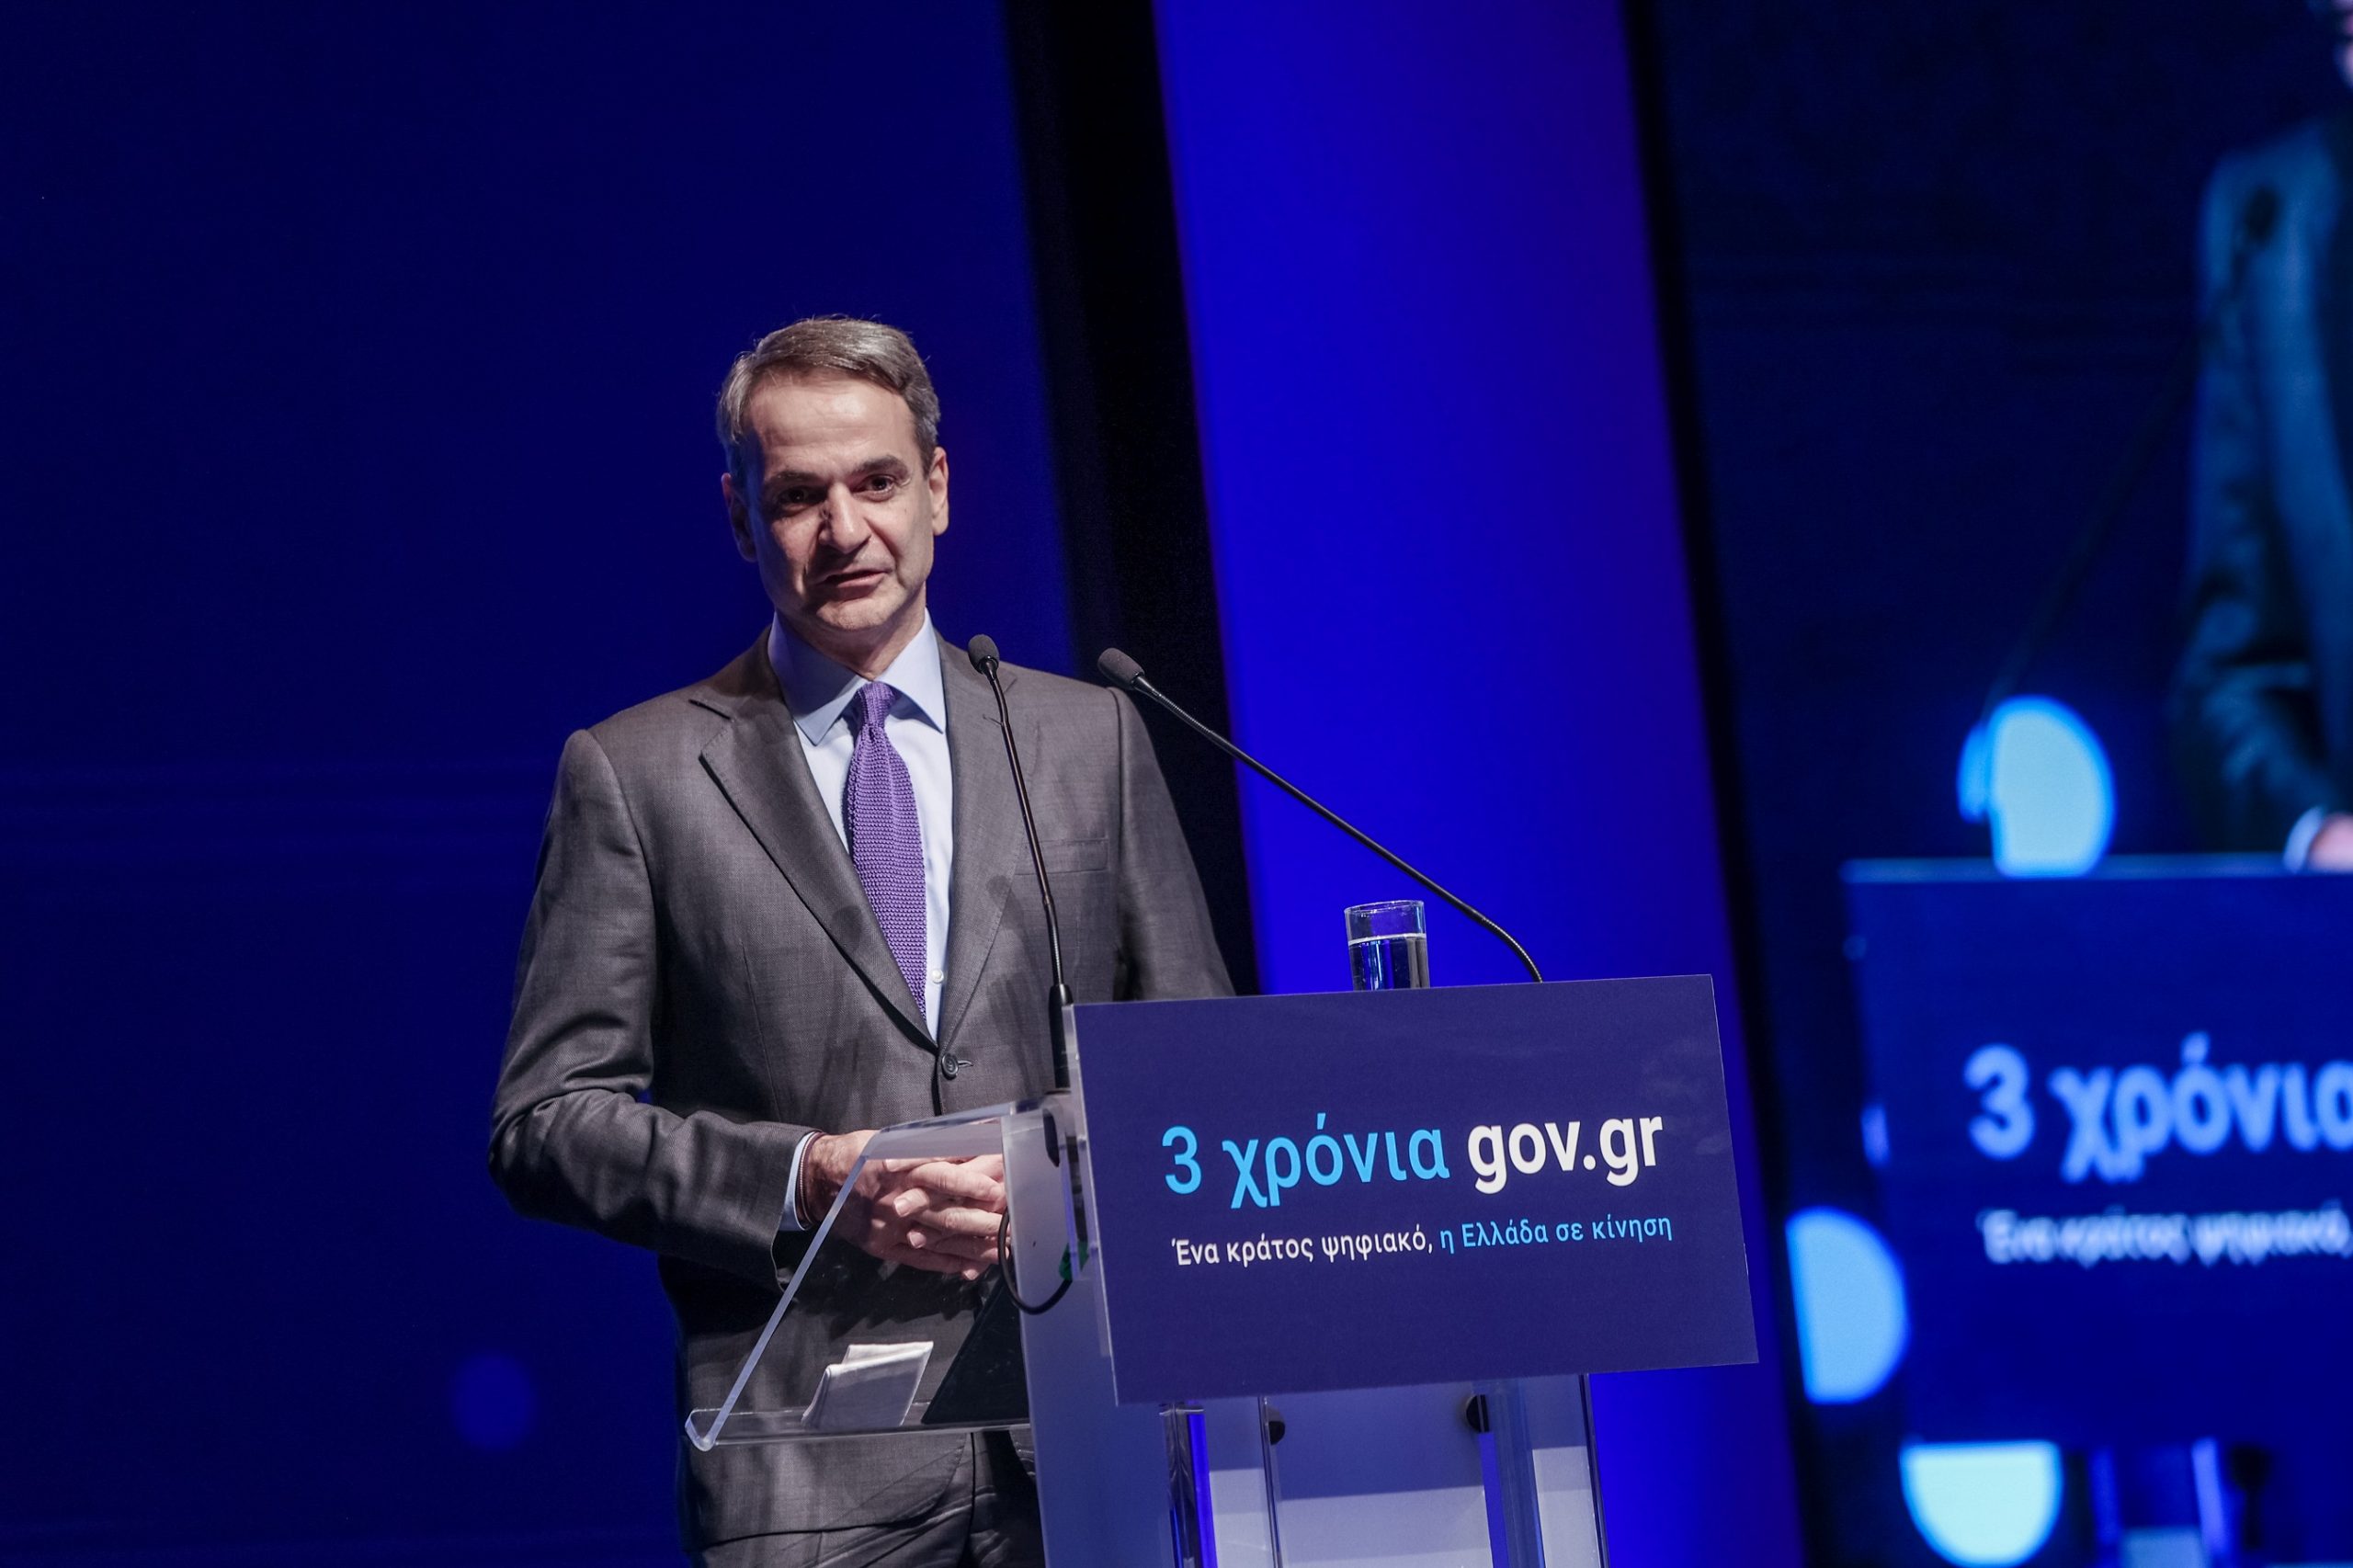 Ground-breaking gov.gr platform marks third year of existence